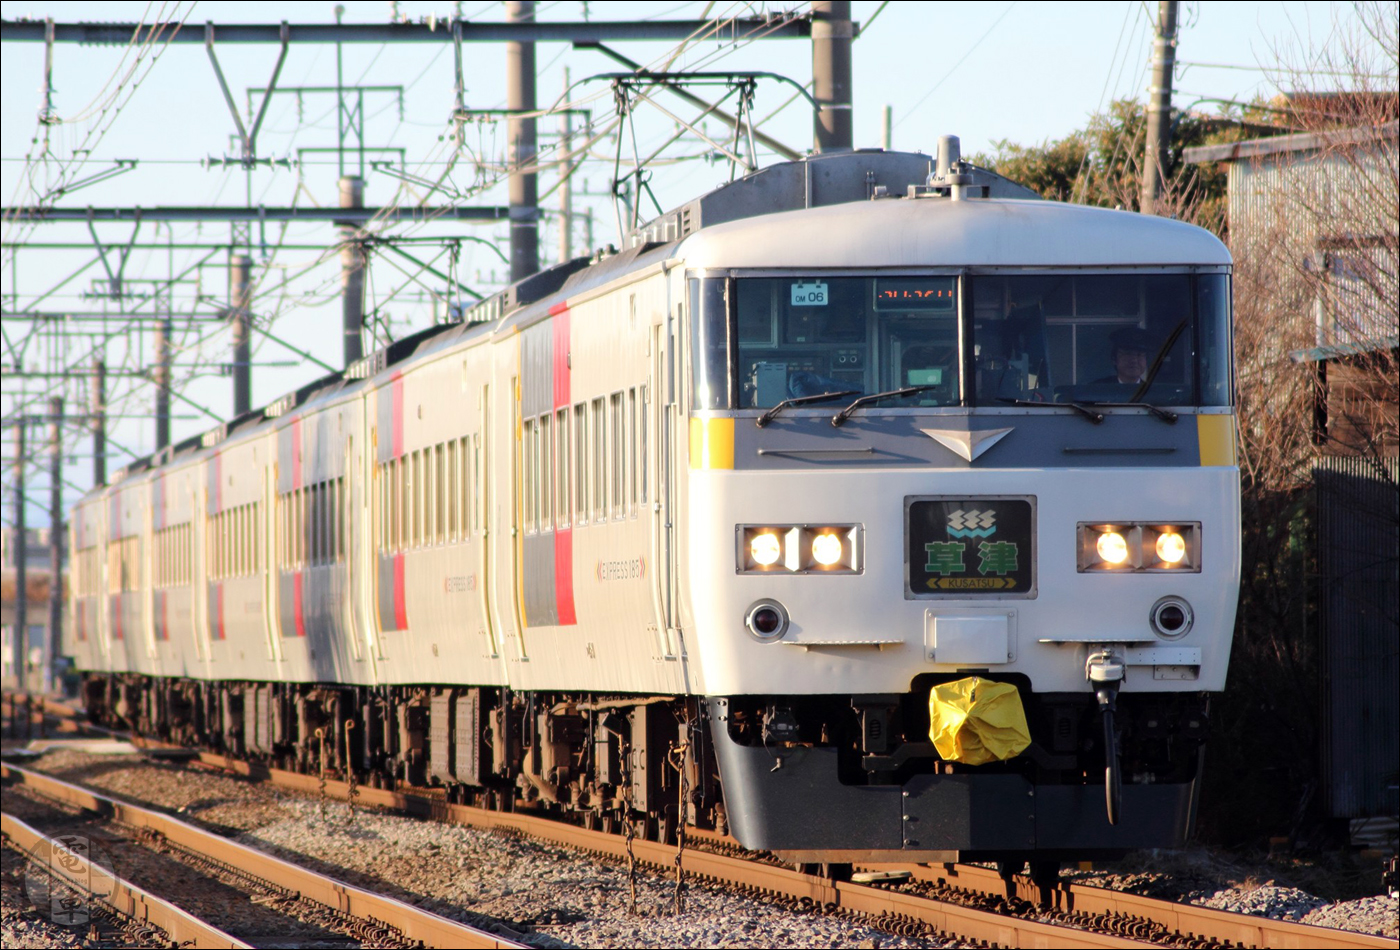 Az 1995 és 1998 között zajló „Renewal” (megújulás) korszerűsítési program keretén belül a Shim-Maebashi vontatási telephelyhez tartozó valamennyi 185-ös sorozatú motorvonat átalakult, létrehozva a közelmúltig is közlekedő 185-200-as alsorozatot.